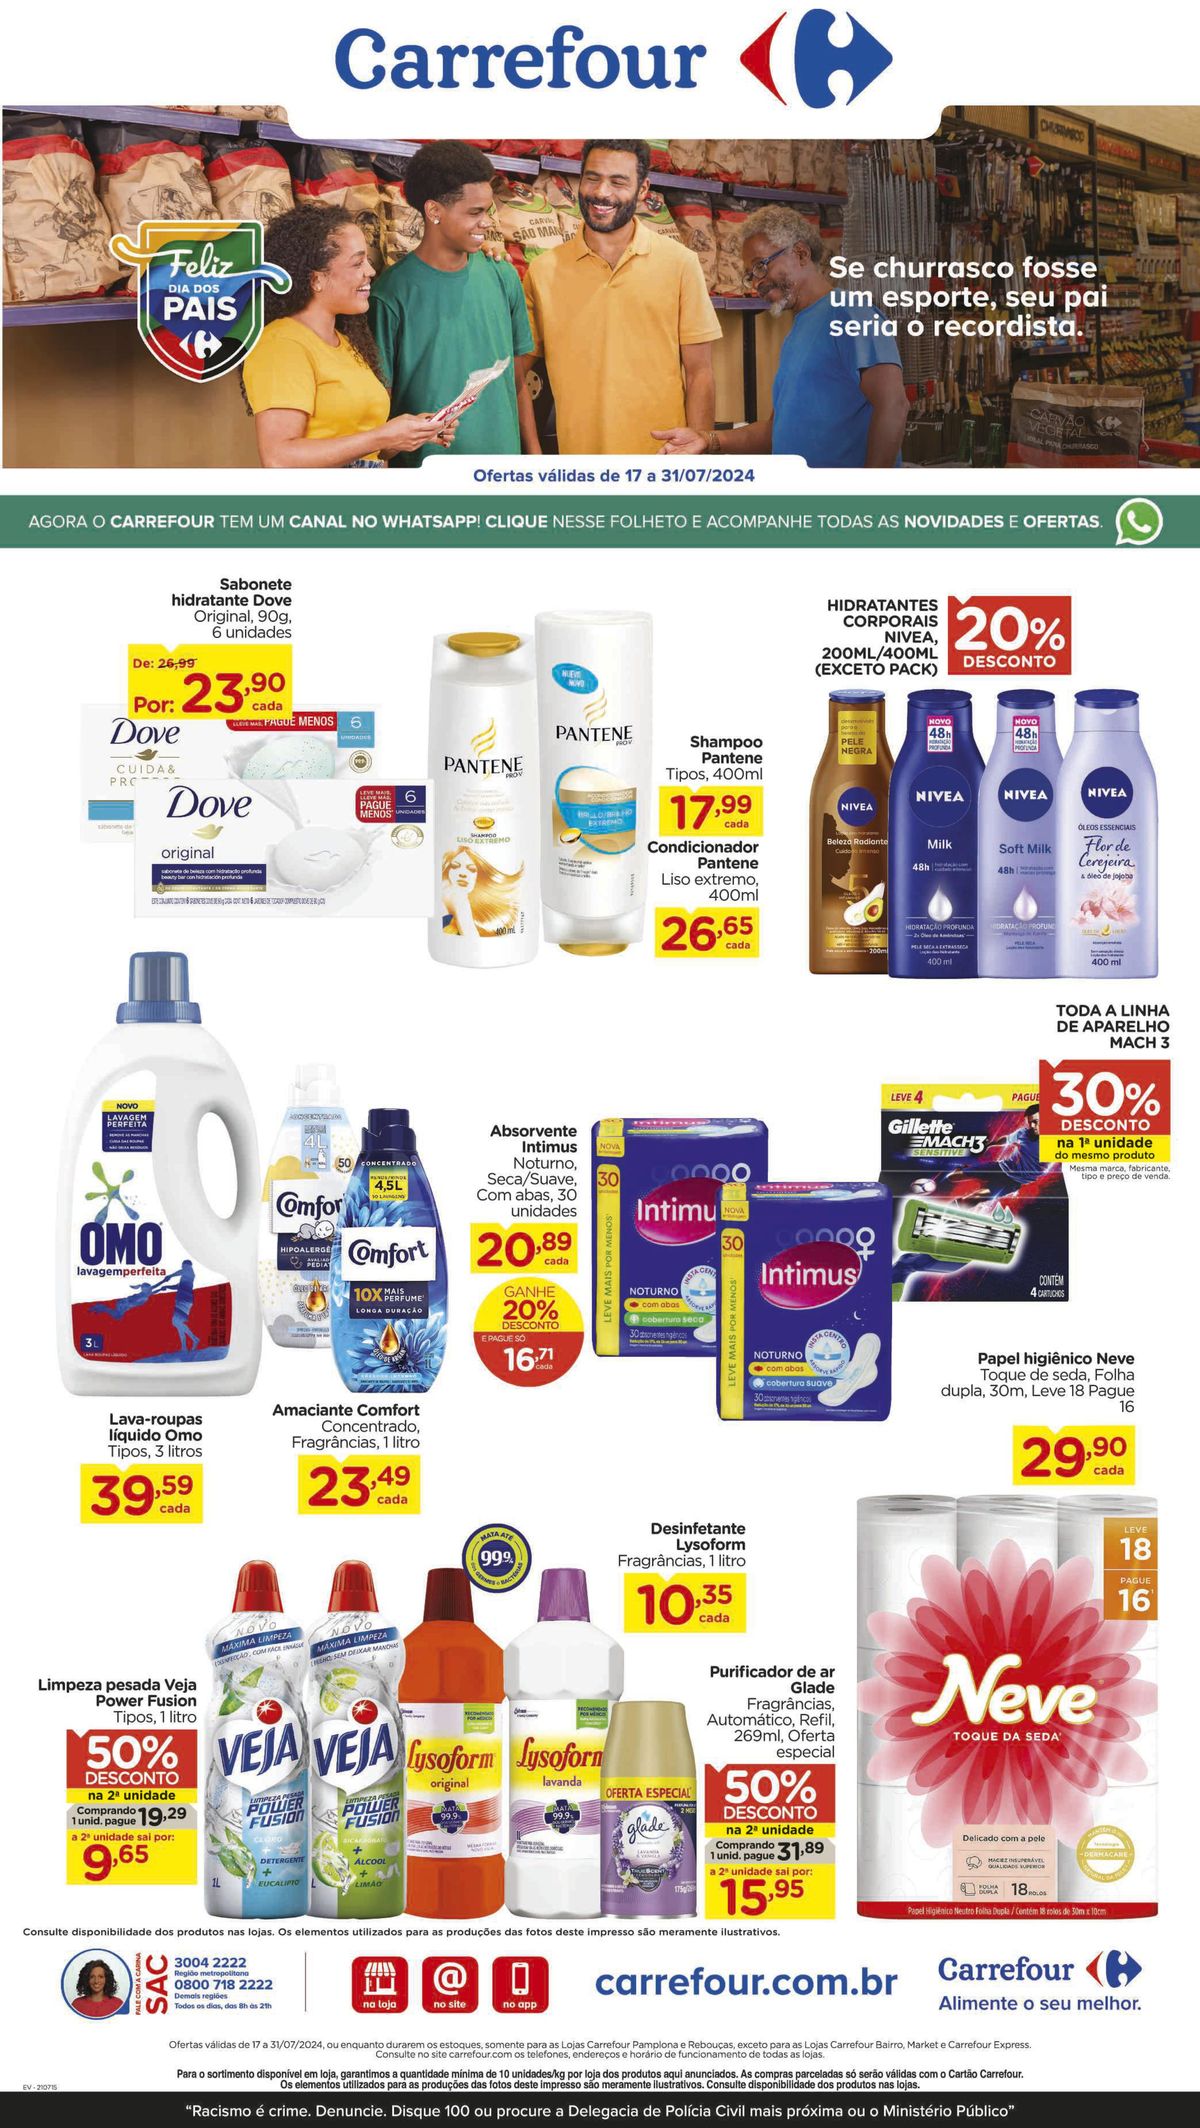 Ofertas em produtos de higiene e limpeza no Carrefour